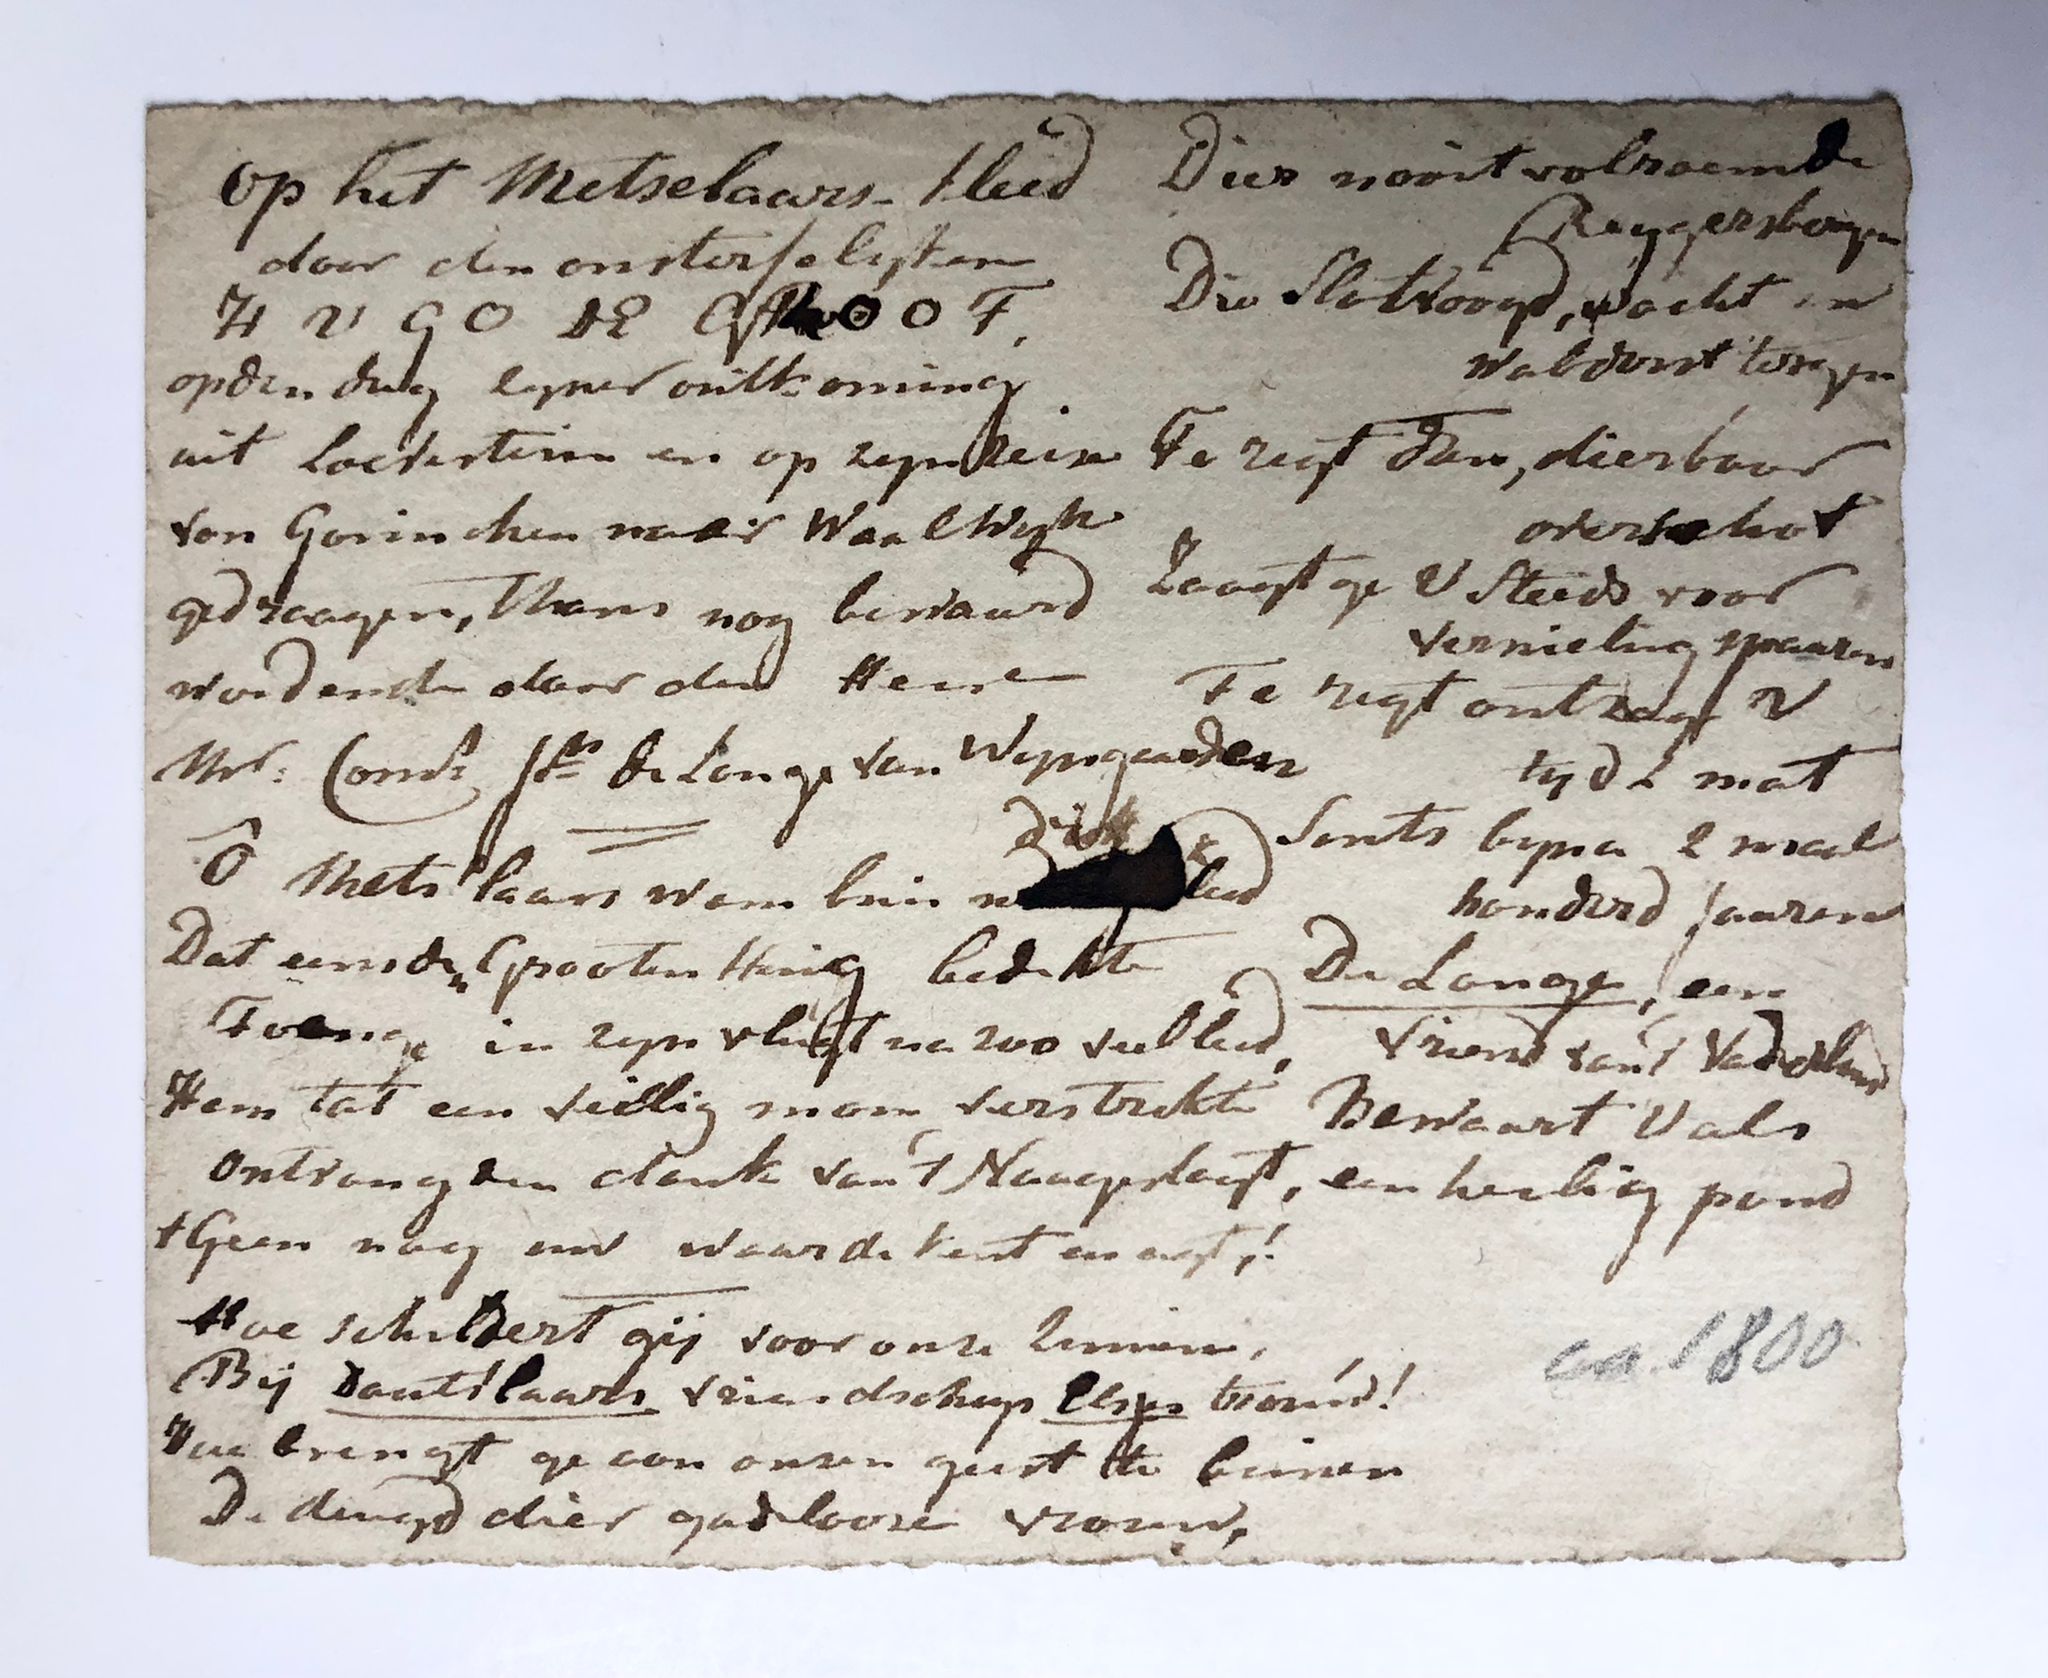  - [Manuscript, poem, Grotius, ca 1800] Poem 'Op het metselaarskleed door den onsterfelijken Hugo de Groot (...) gedraagen, thans nog bewaard wordende door den heere mr. Corn. de Lange van Wijngaarden'. Manuscript, 1 p, ca. 1800.